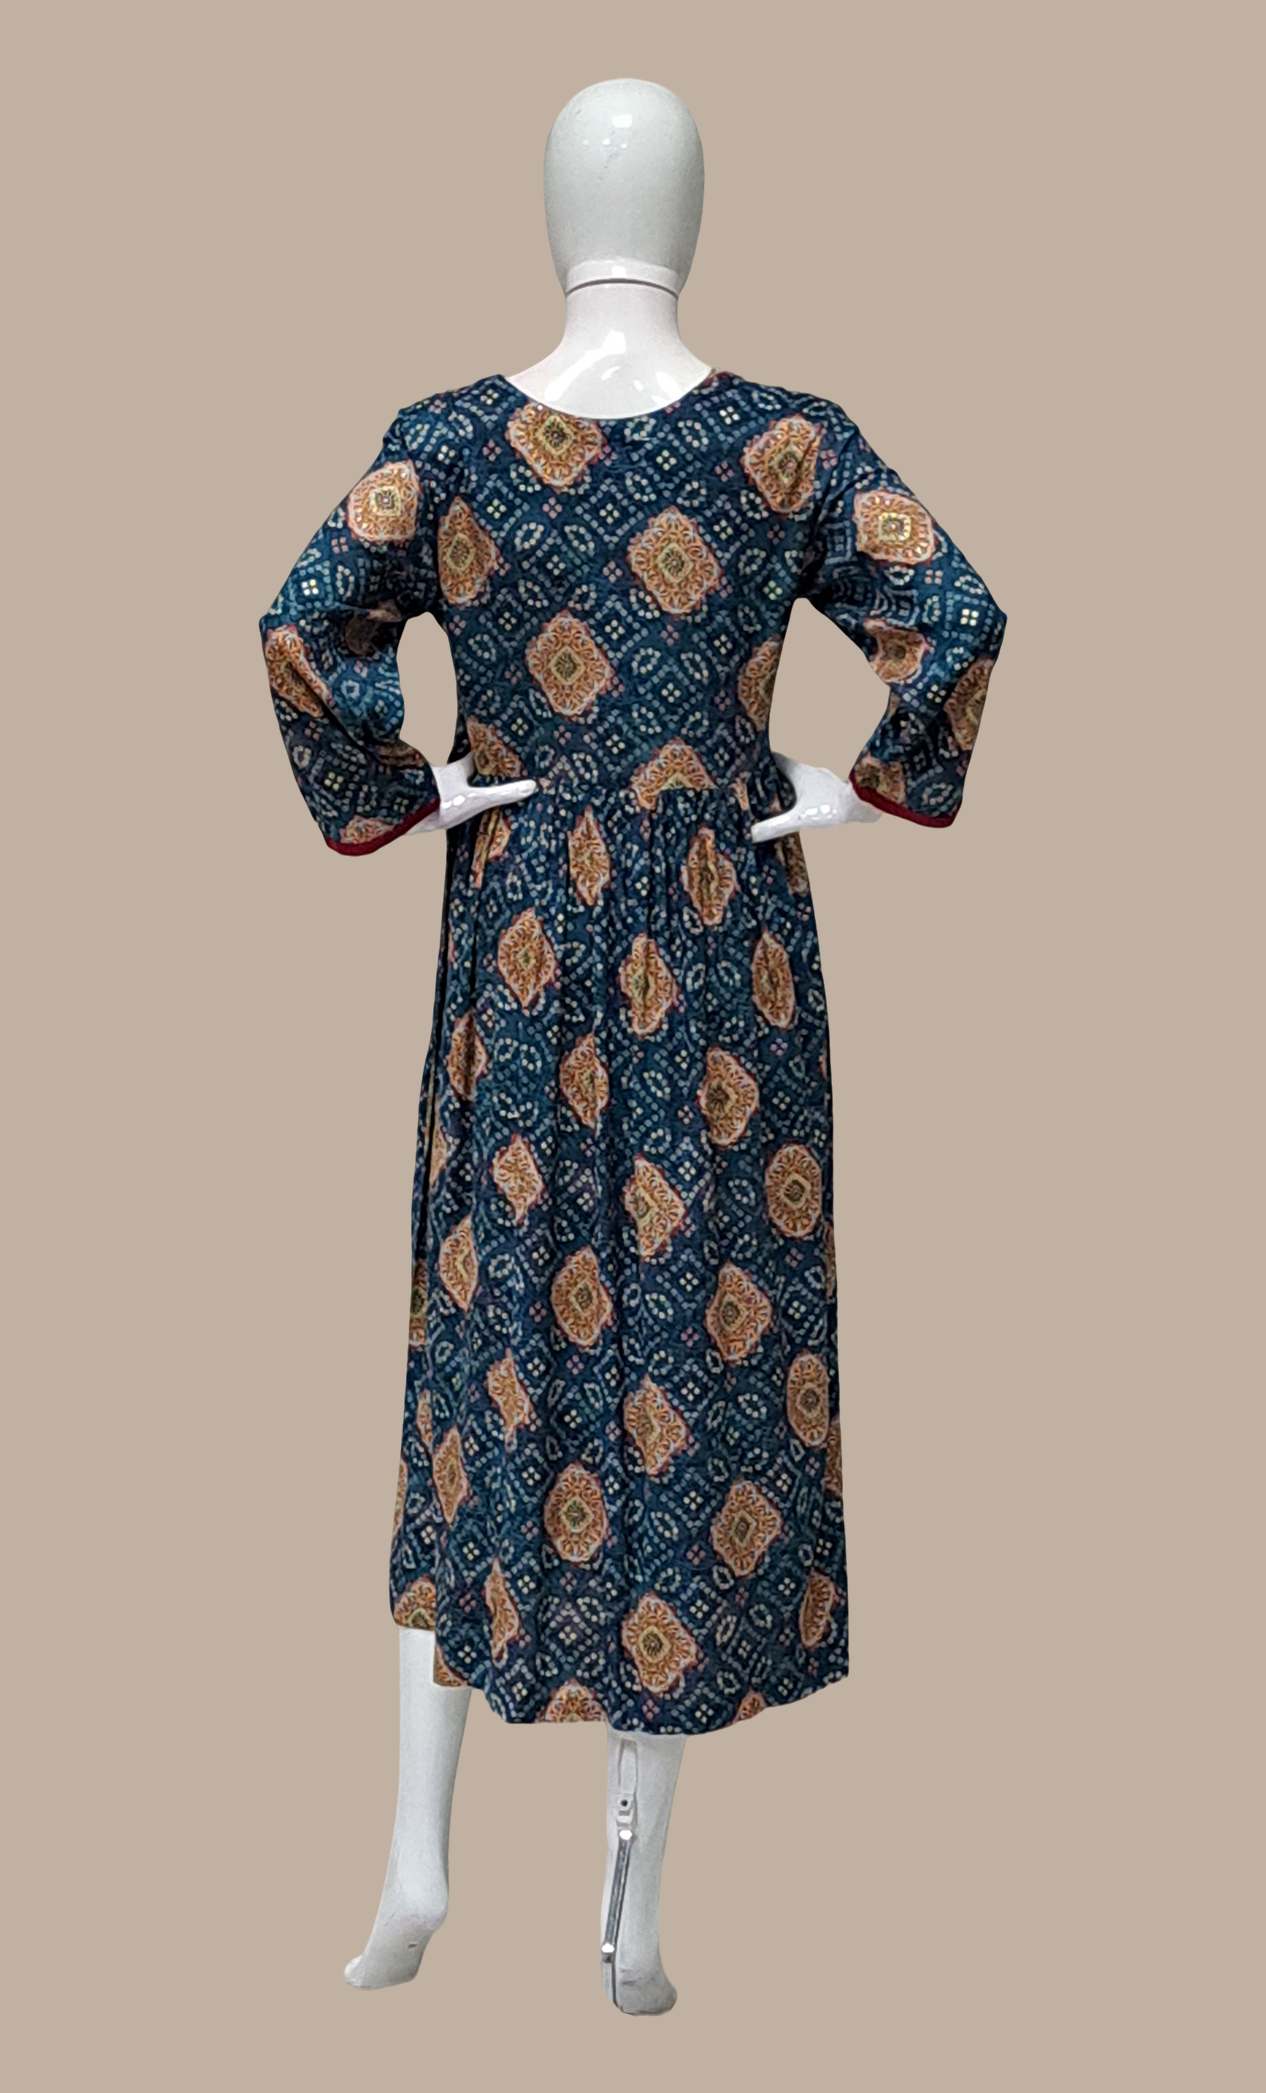 Teal Bandhani Printed Kurti Dress